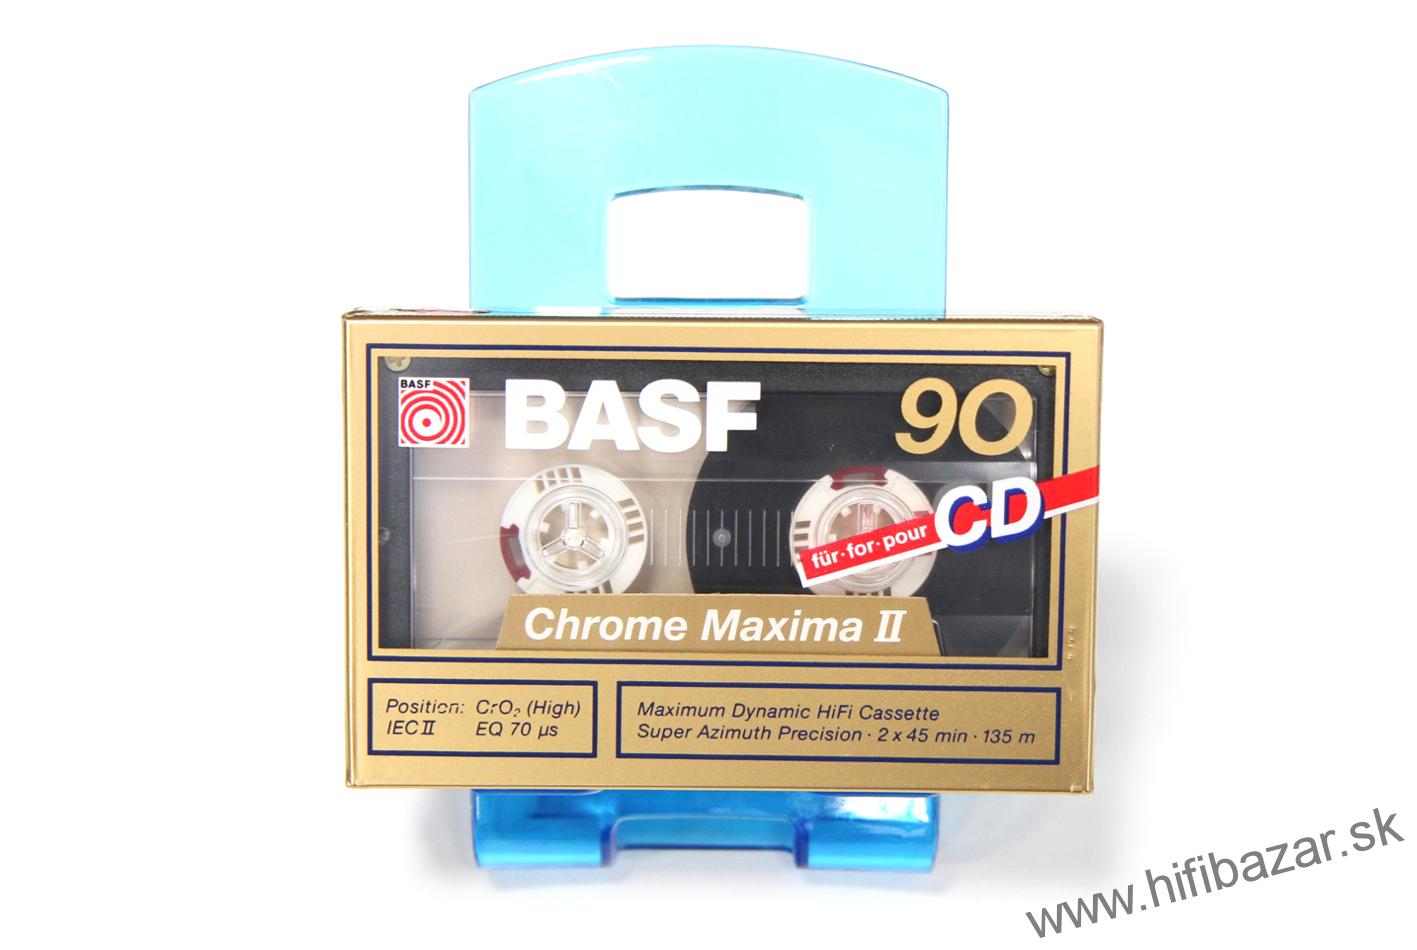 BASF II-90 Chrome Maxima